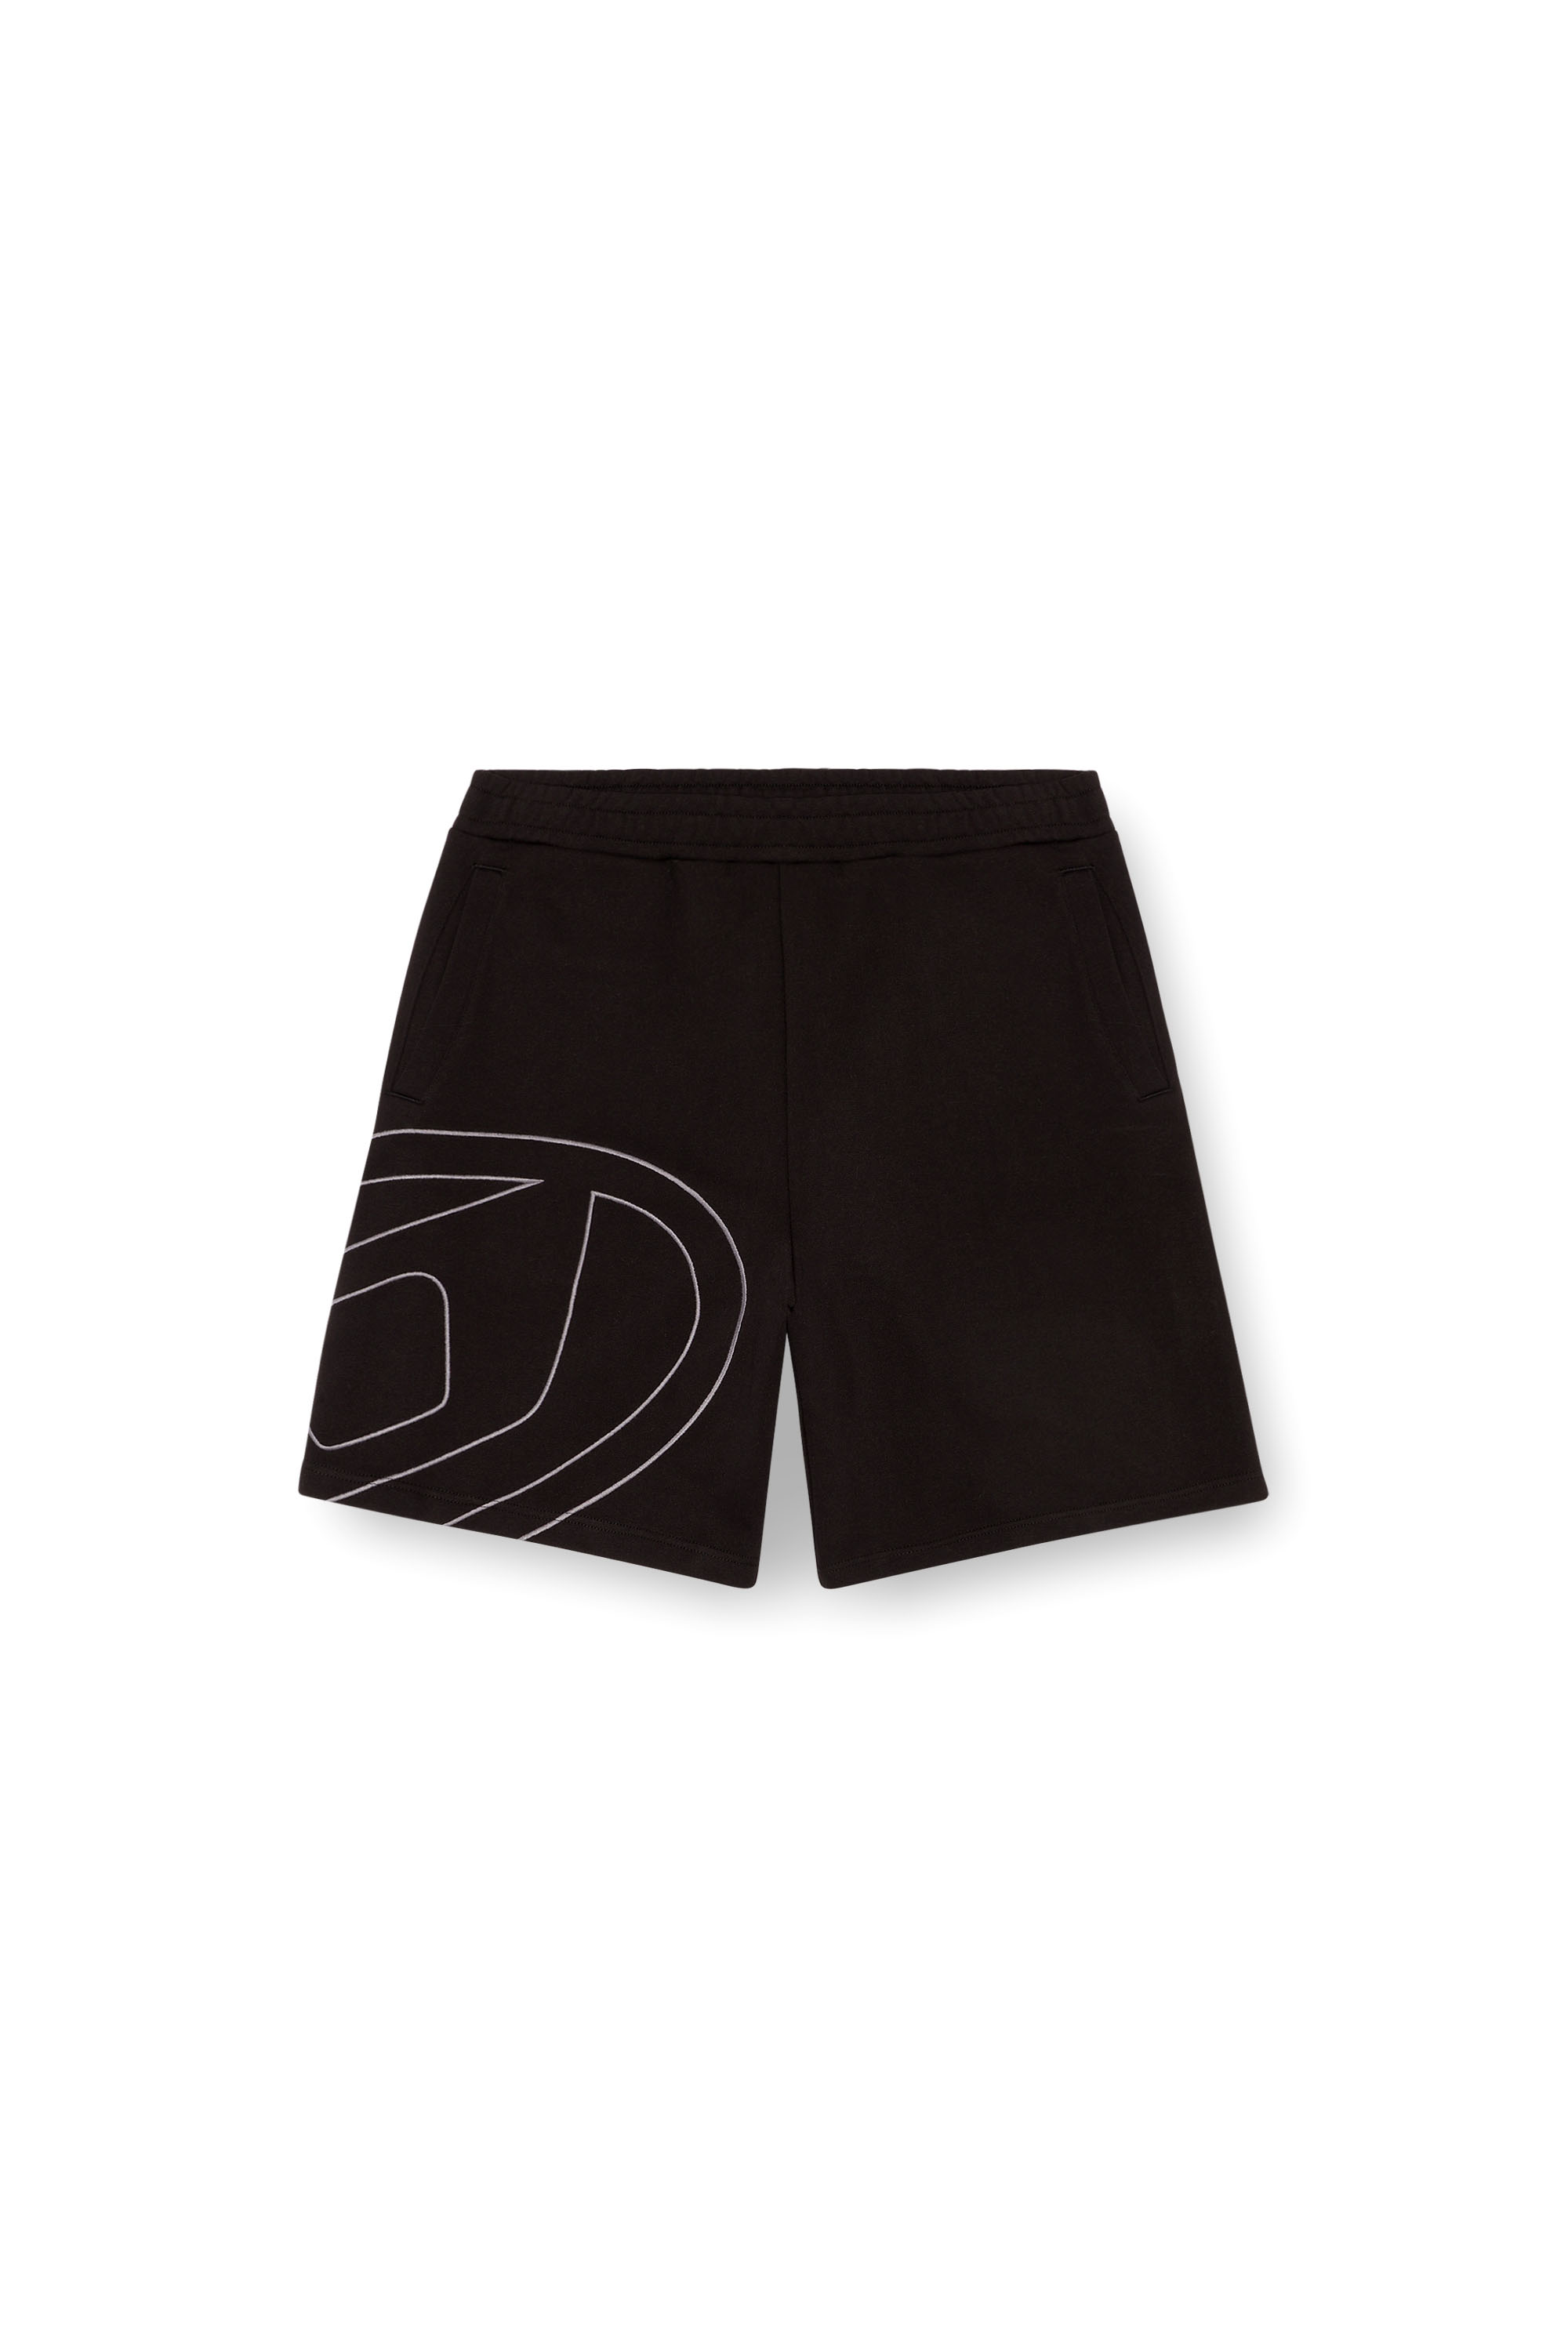 Diesel - P-CROW-MEGOVAL, Hombre Pantalones deportivos cortos con logotipo D grande in Negro - Image 3